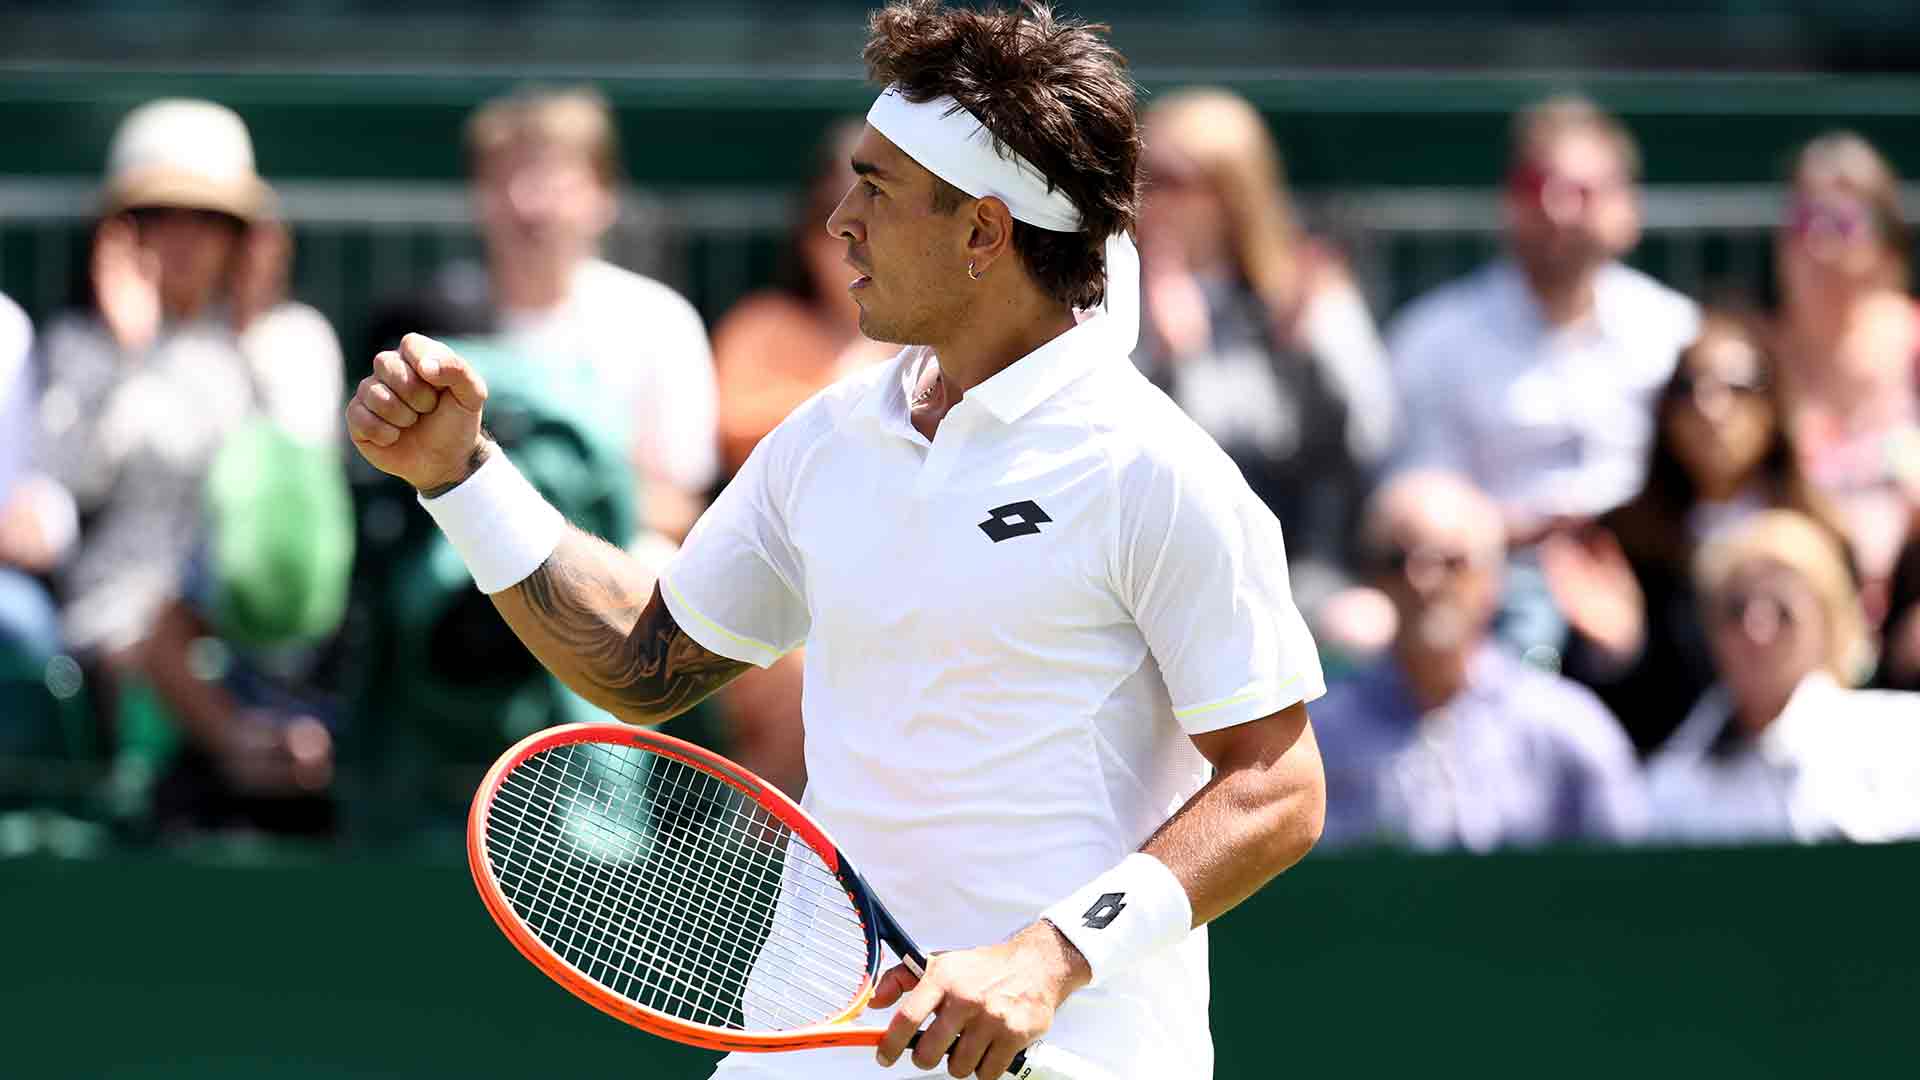 Francisco Comesaña juega por primera vez en Wimbledon el cuadro principal de un Grand Slam.